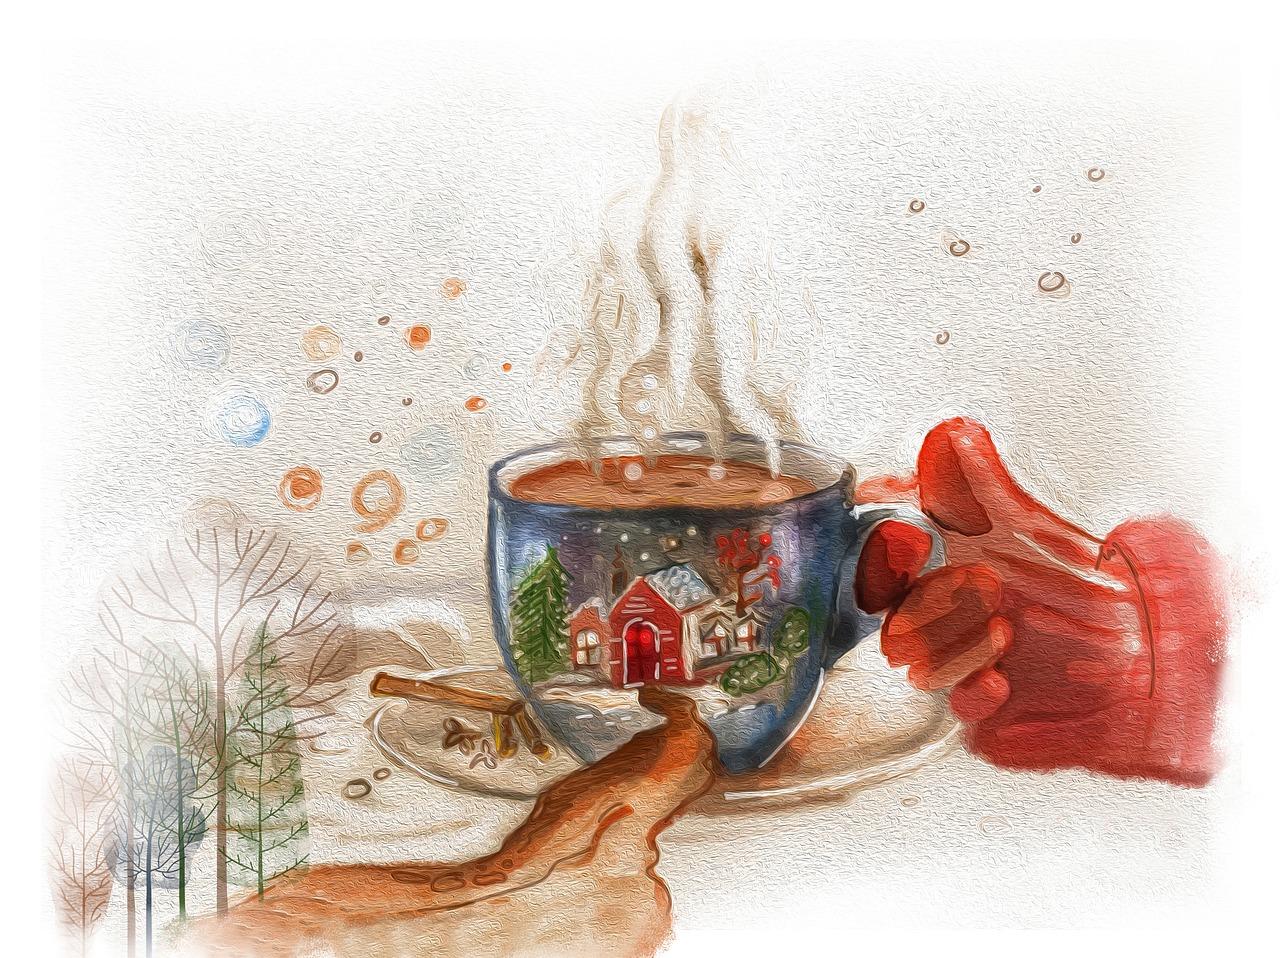 395 955 рез. по запросу «Зима кофе» — изображения, стоковые фотографии,  трехмерные объекты и векторная графика | Shutterstock